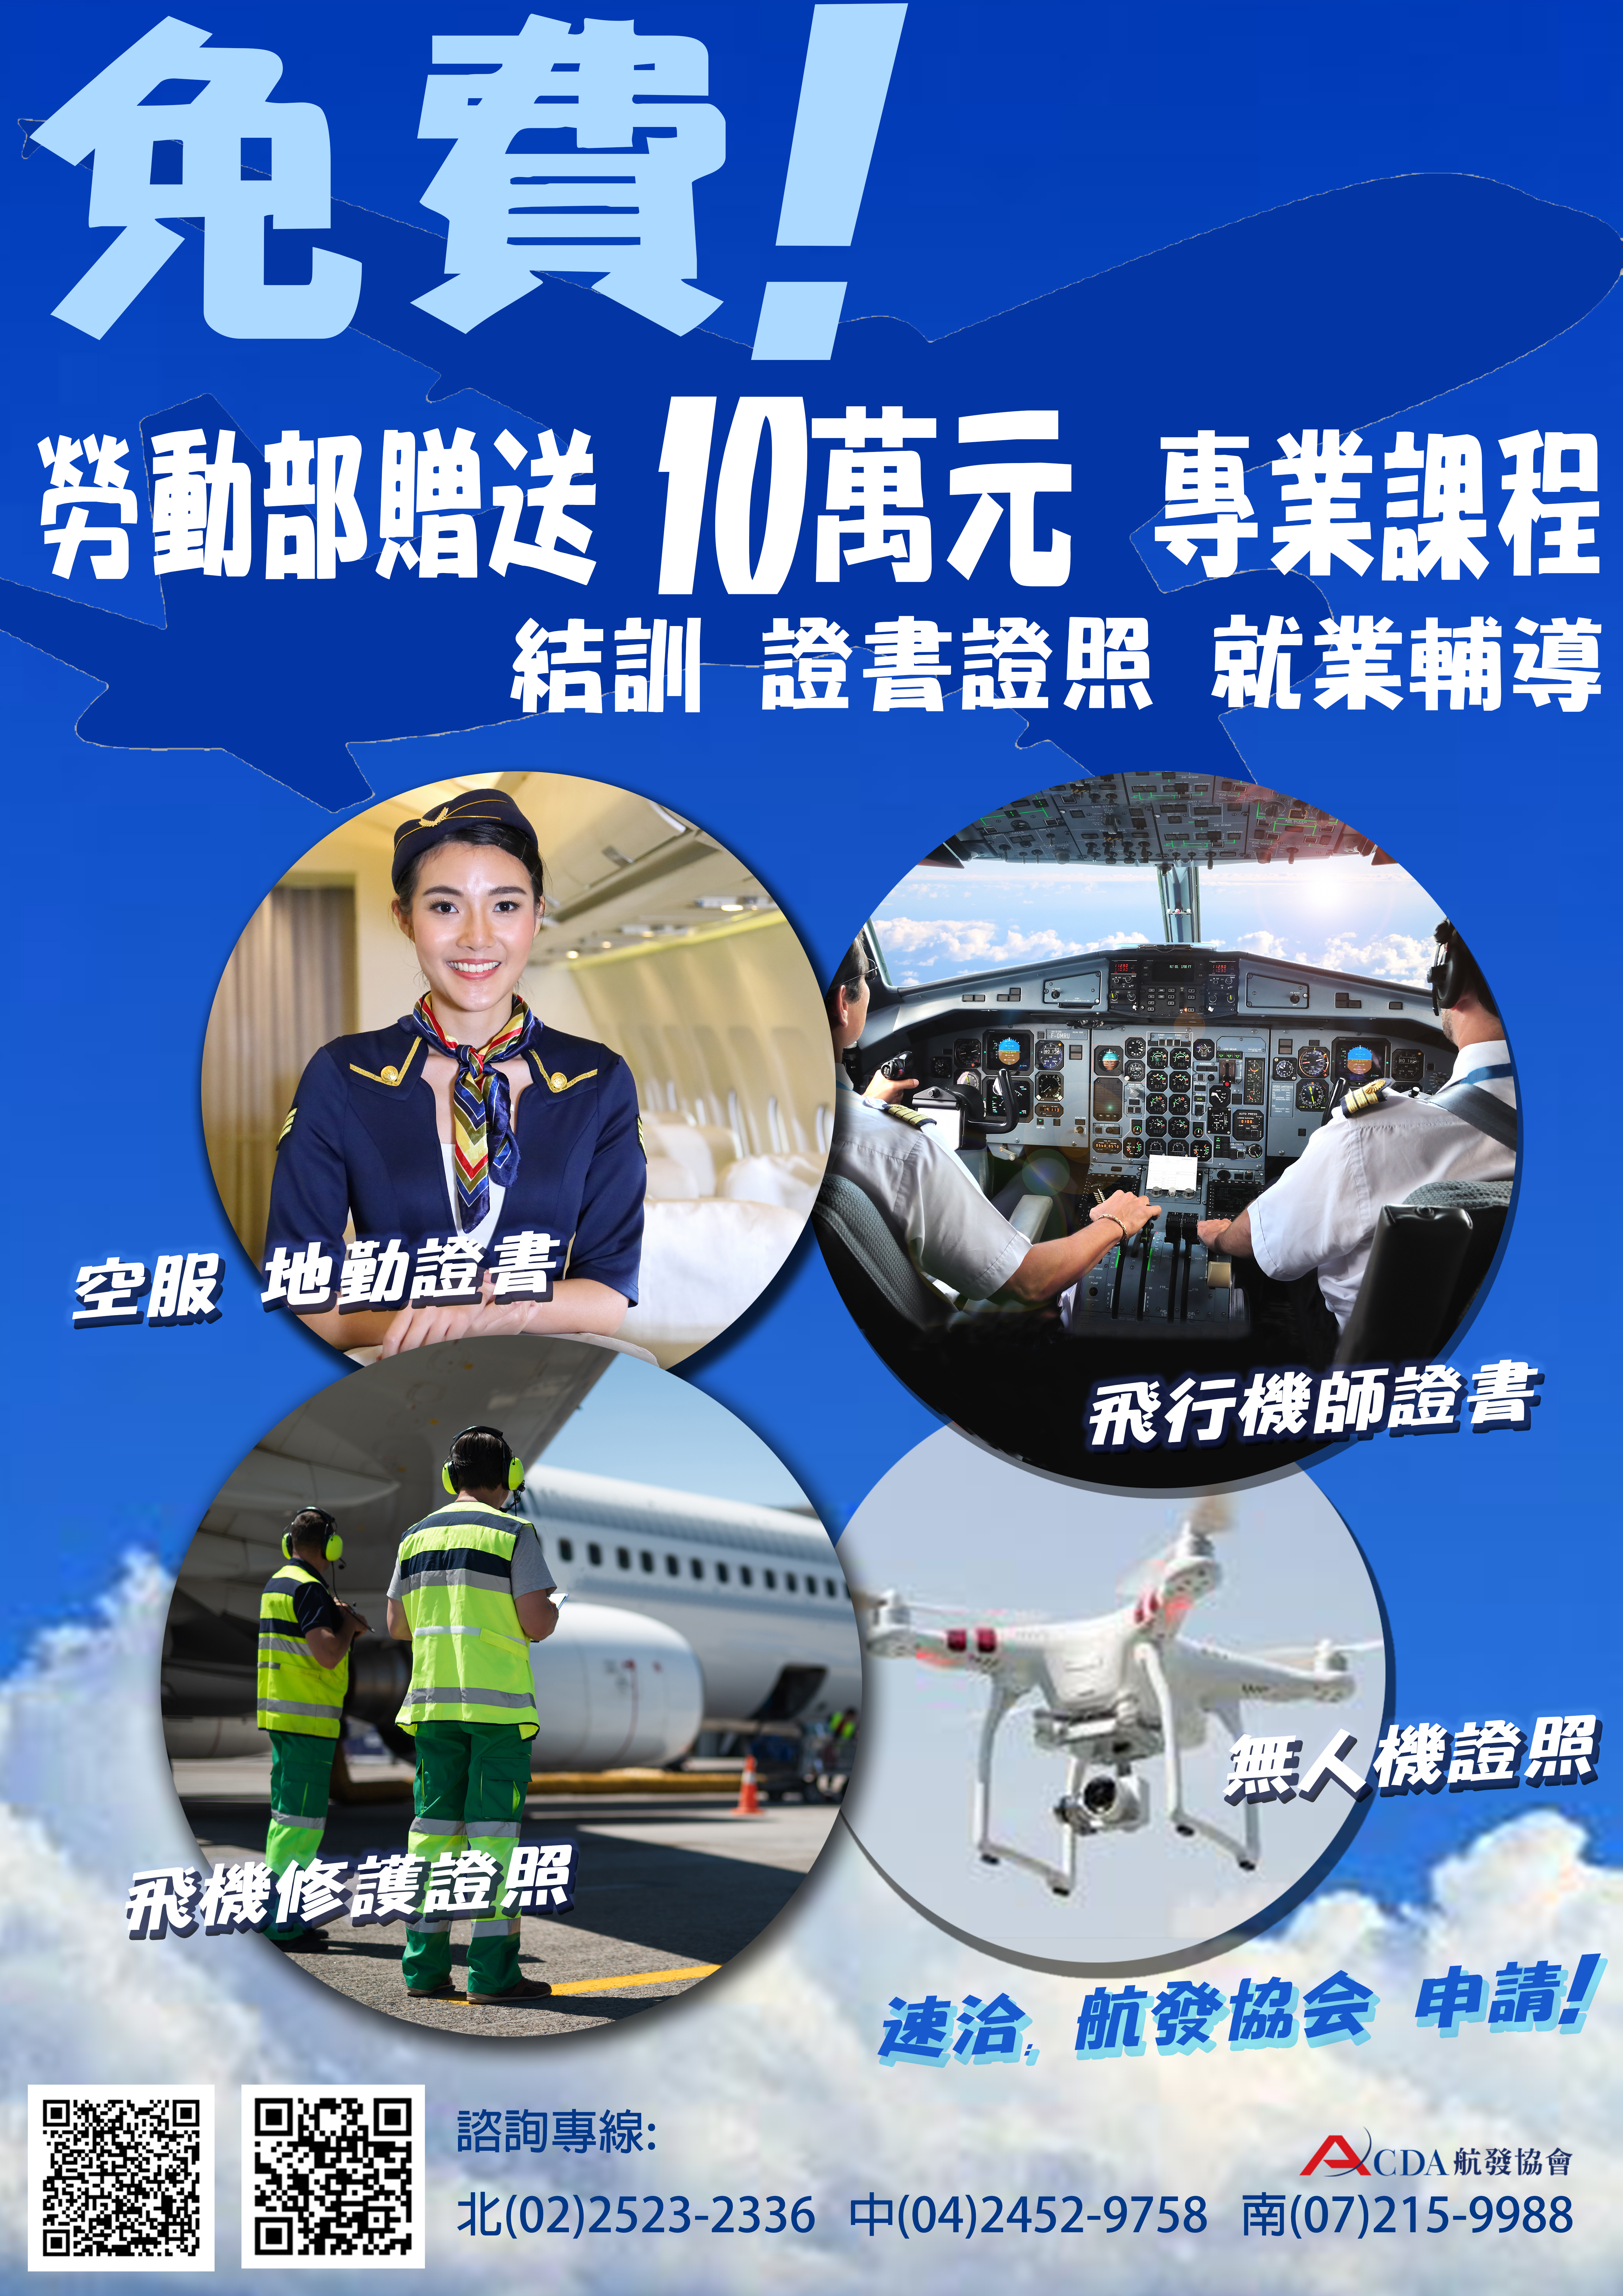 中華科大-無人機、飛行機師證照.jpg (8.90 MB)